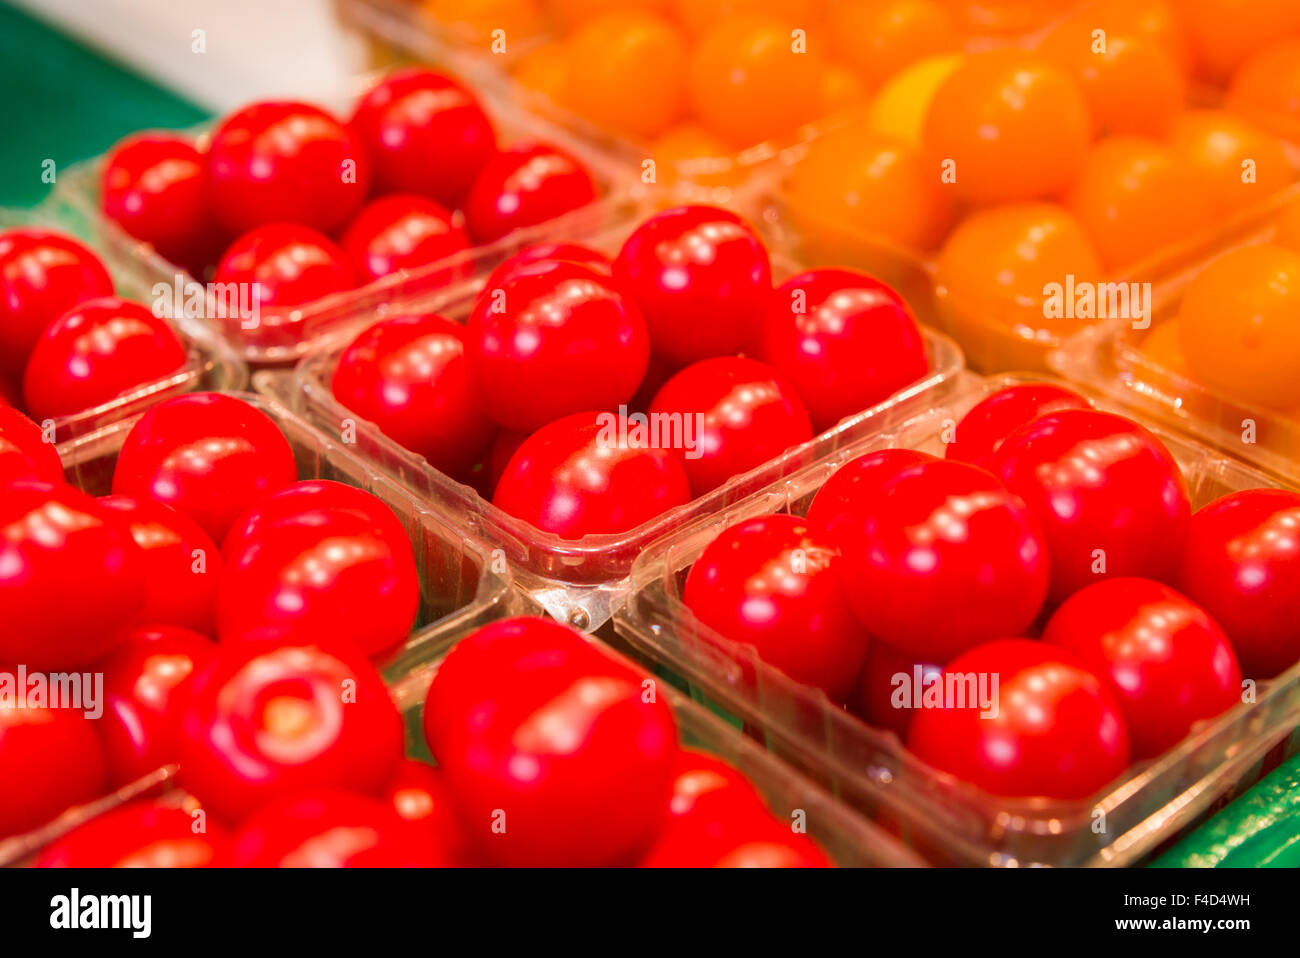 Canada, Montreal, Marche Jean Talon market, tomatoes Stock Photo